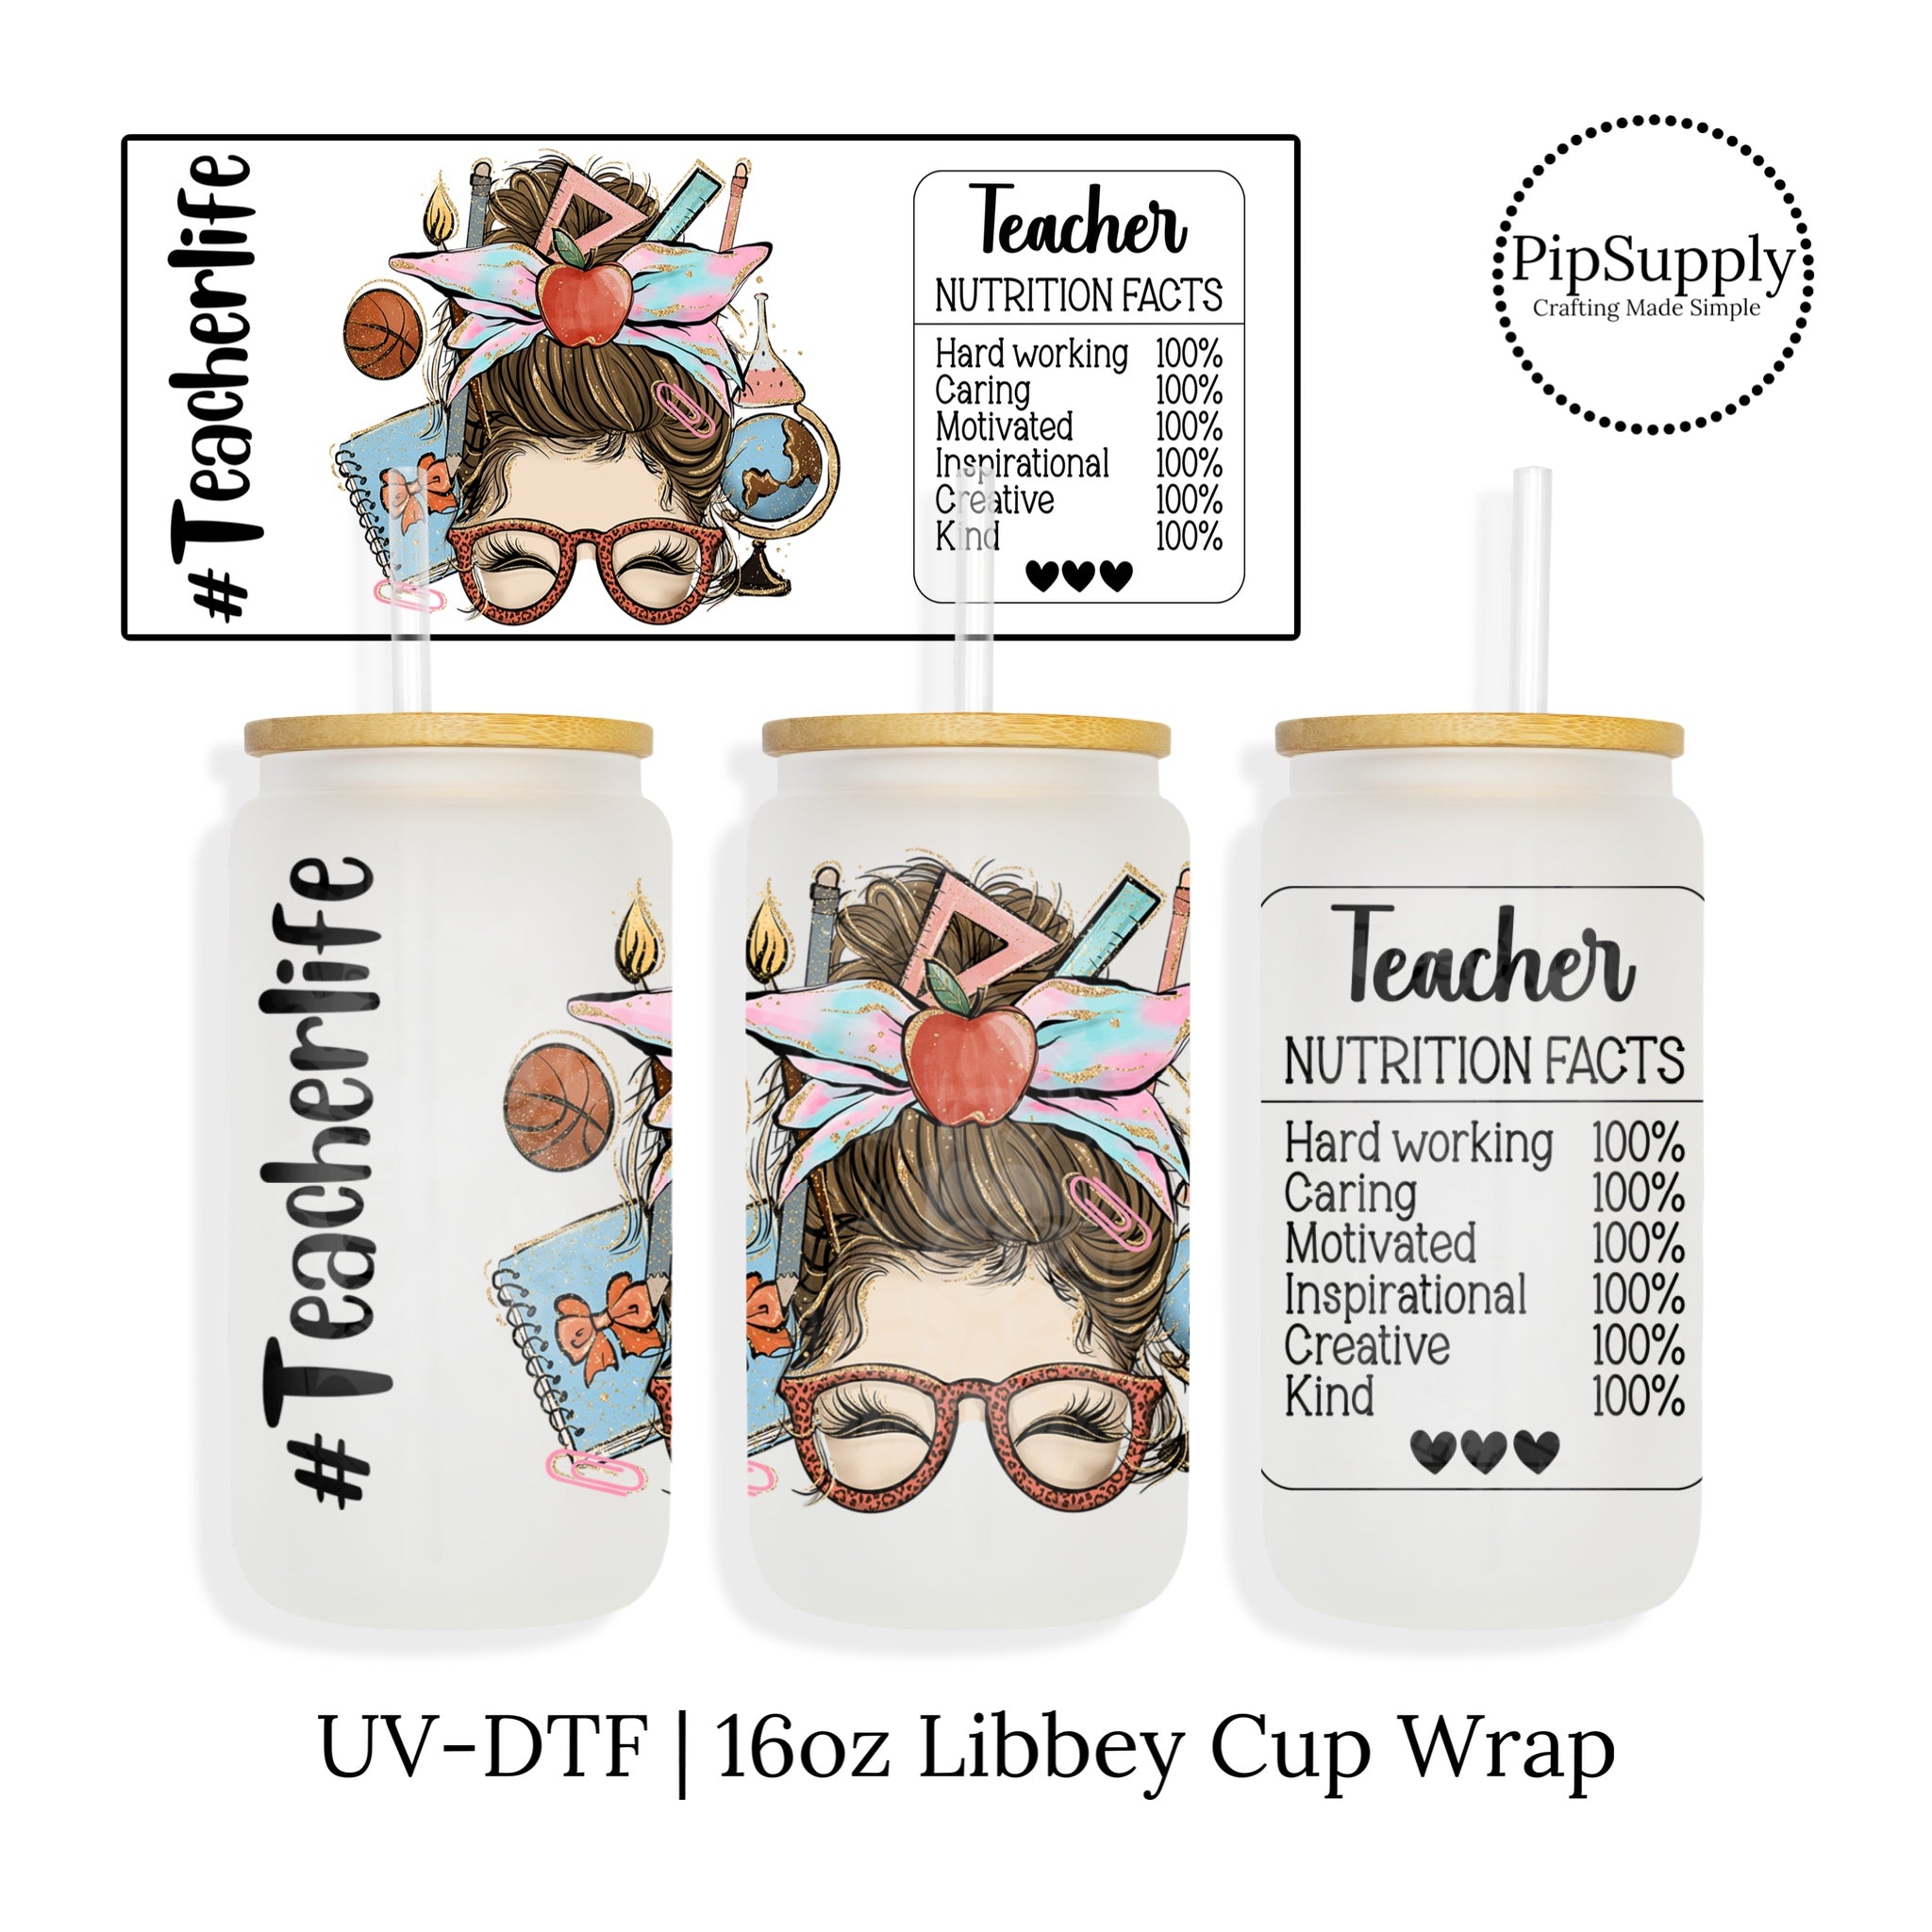 Leopard Rainbow Teacher Life UV-DTF Cup Wrap